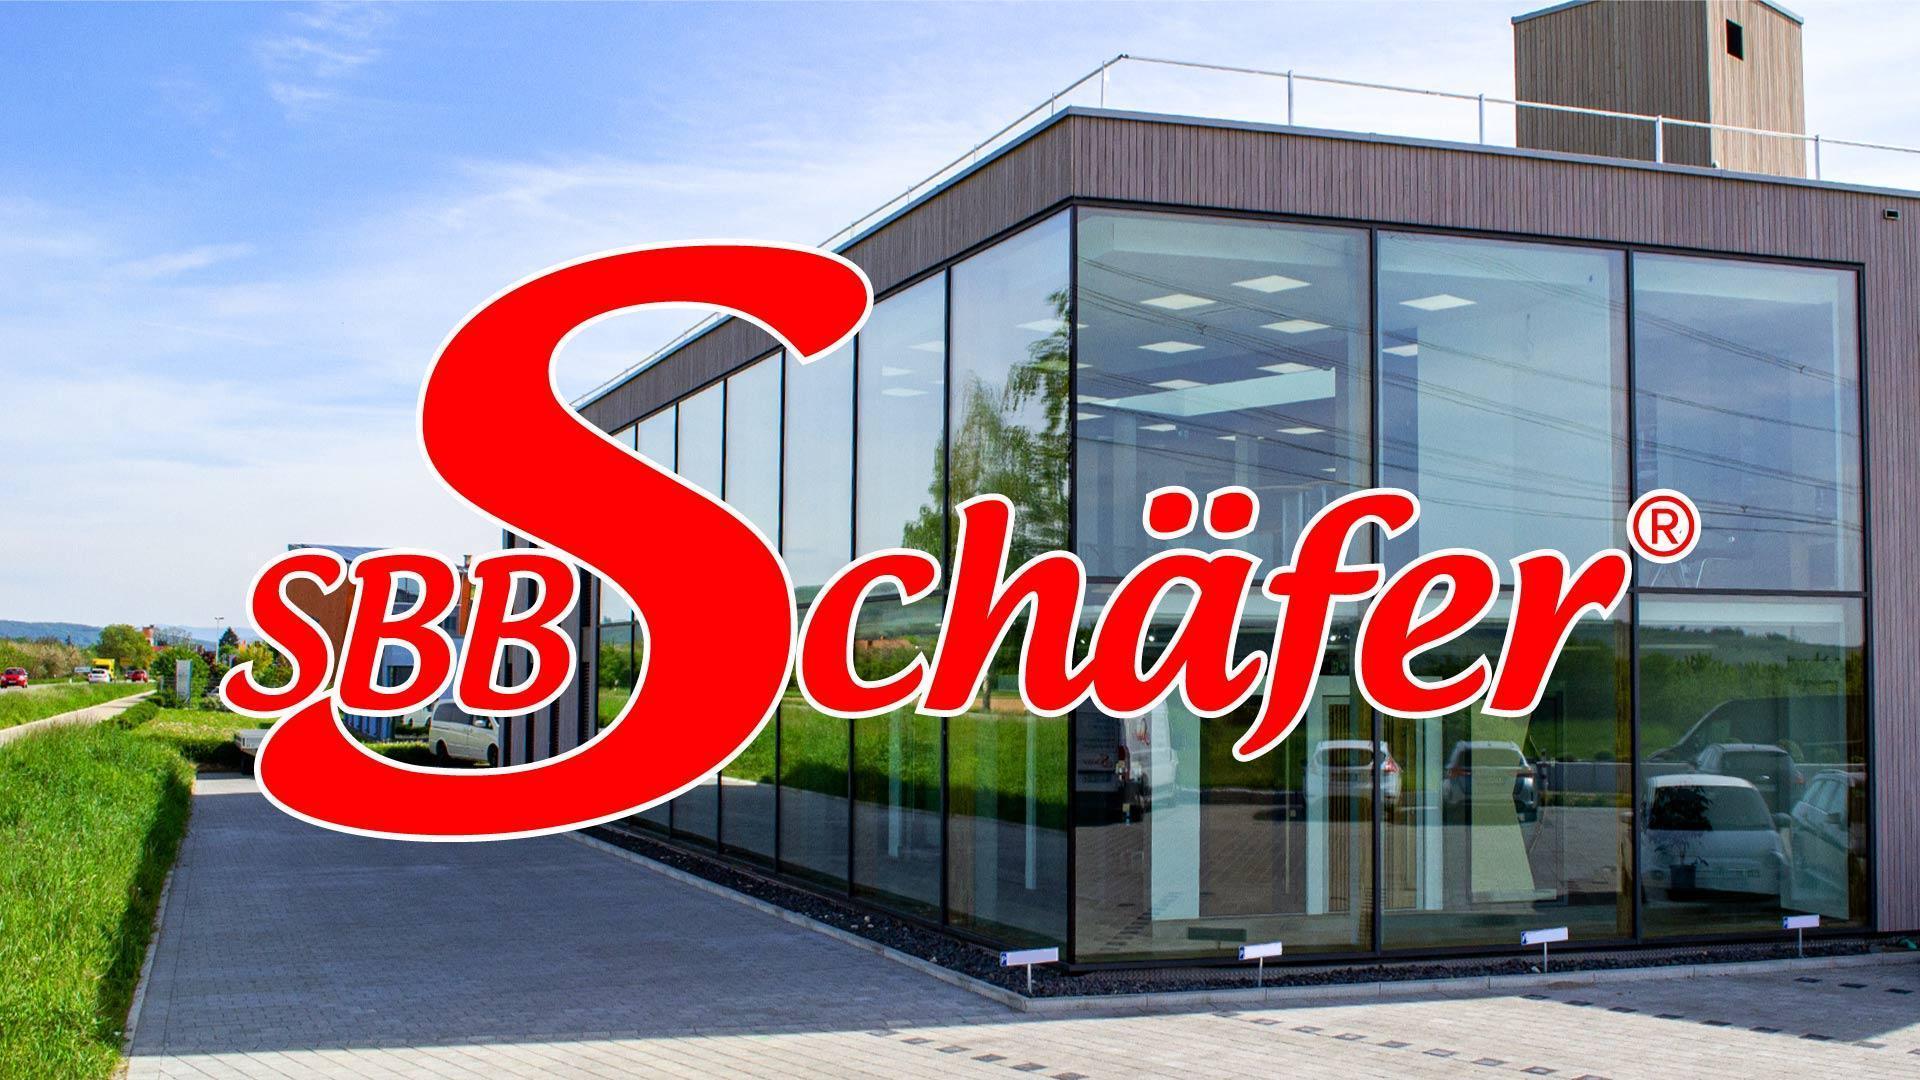 (c) Sbb-schaefer.de